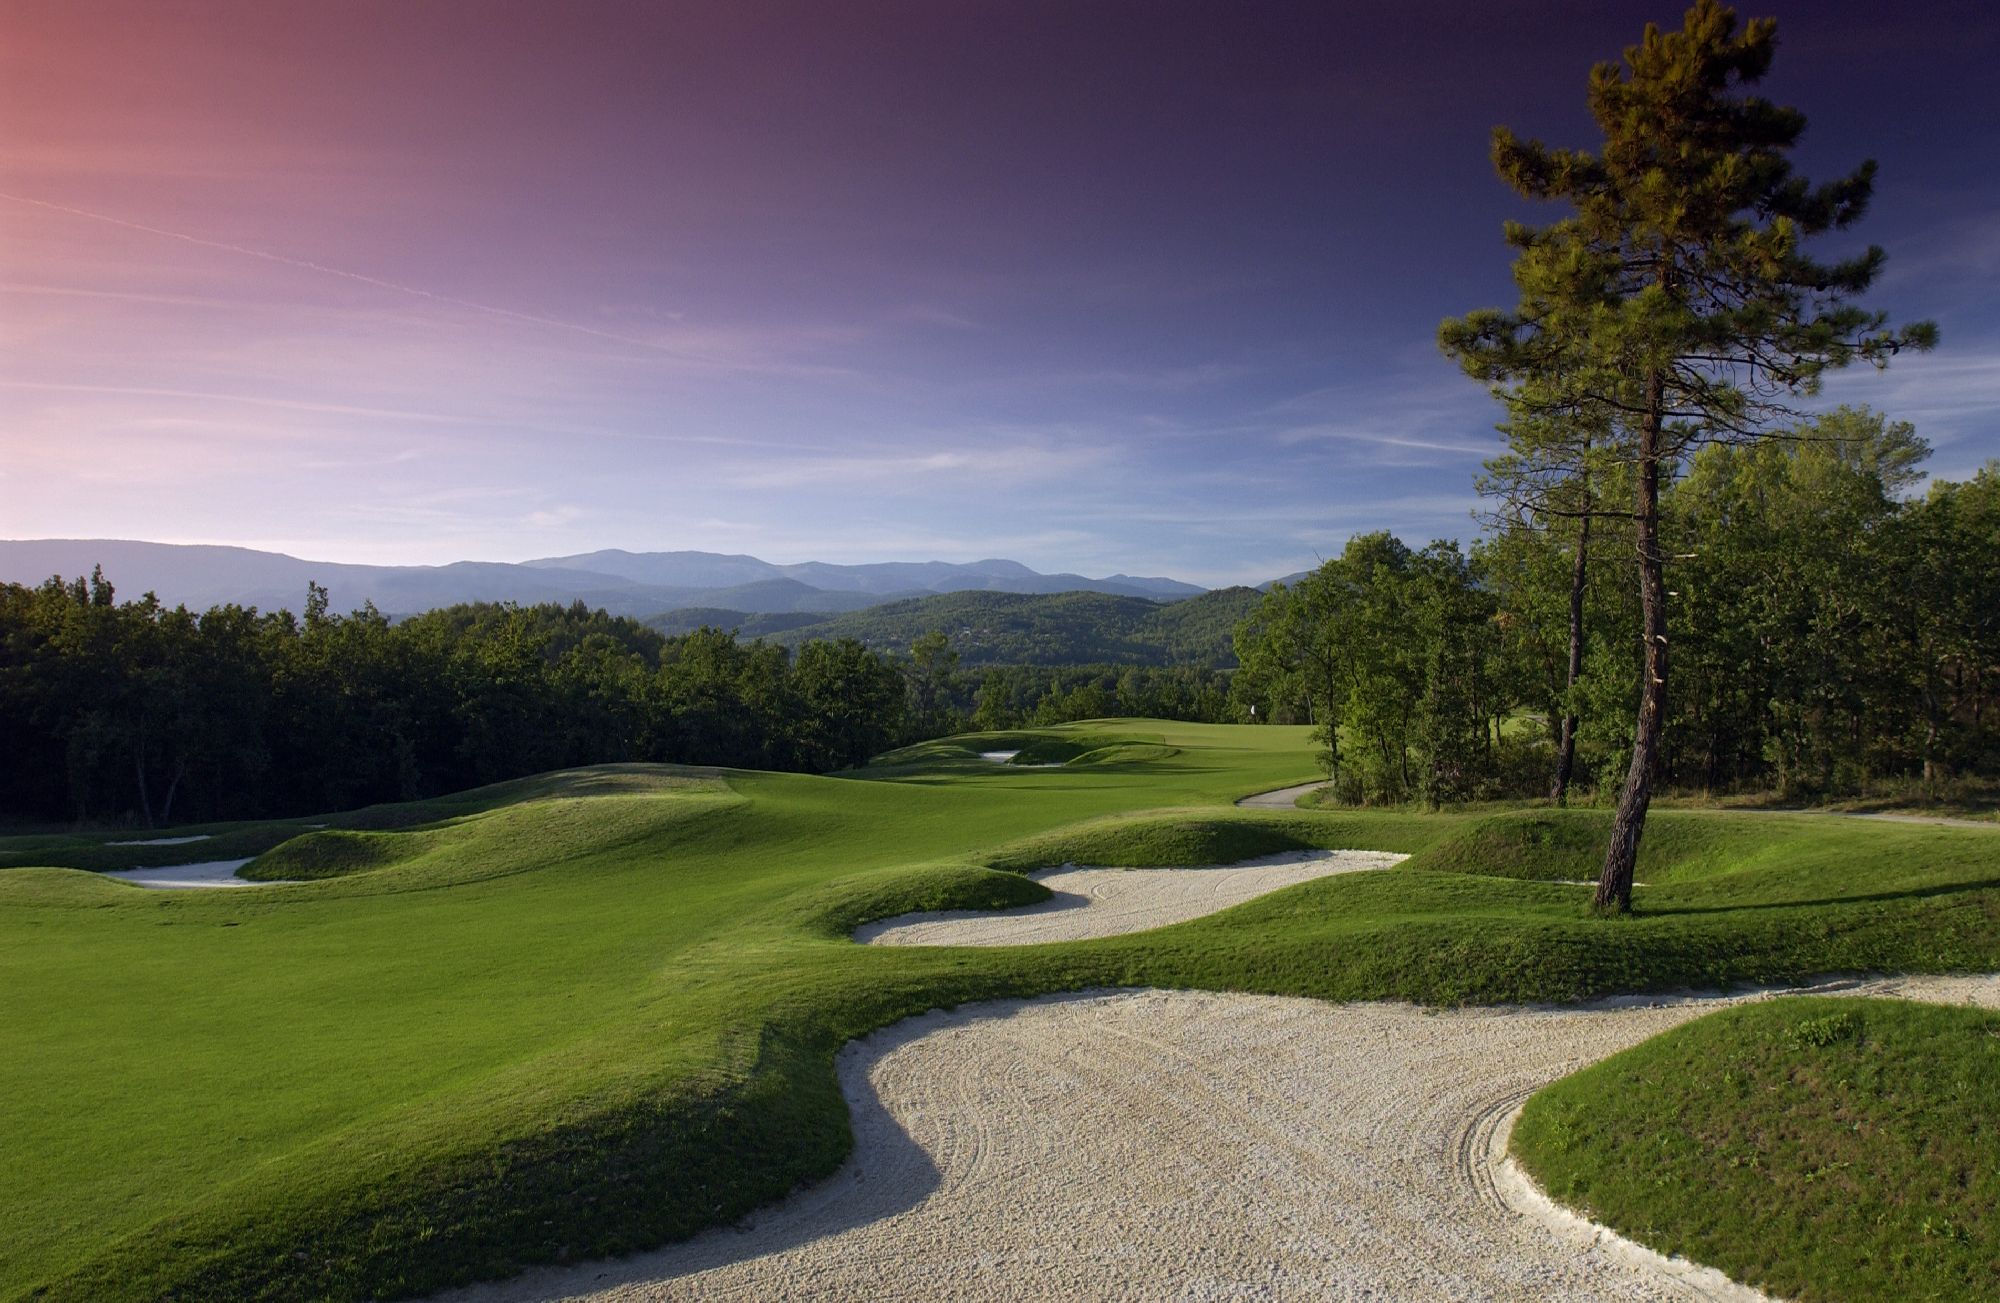 golf-expedition-golf-reizen-frankrijk-regio-cote-d'azur-terre-blanche-hotel-spa-golf-resort-golfbaan-bunker-uitzicht-fairway